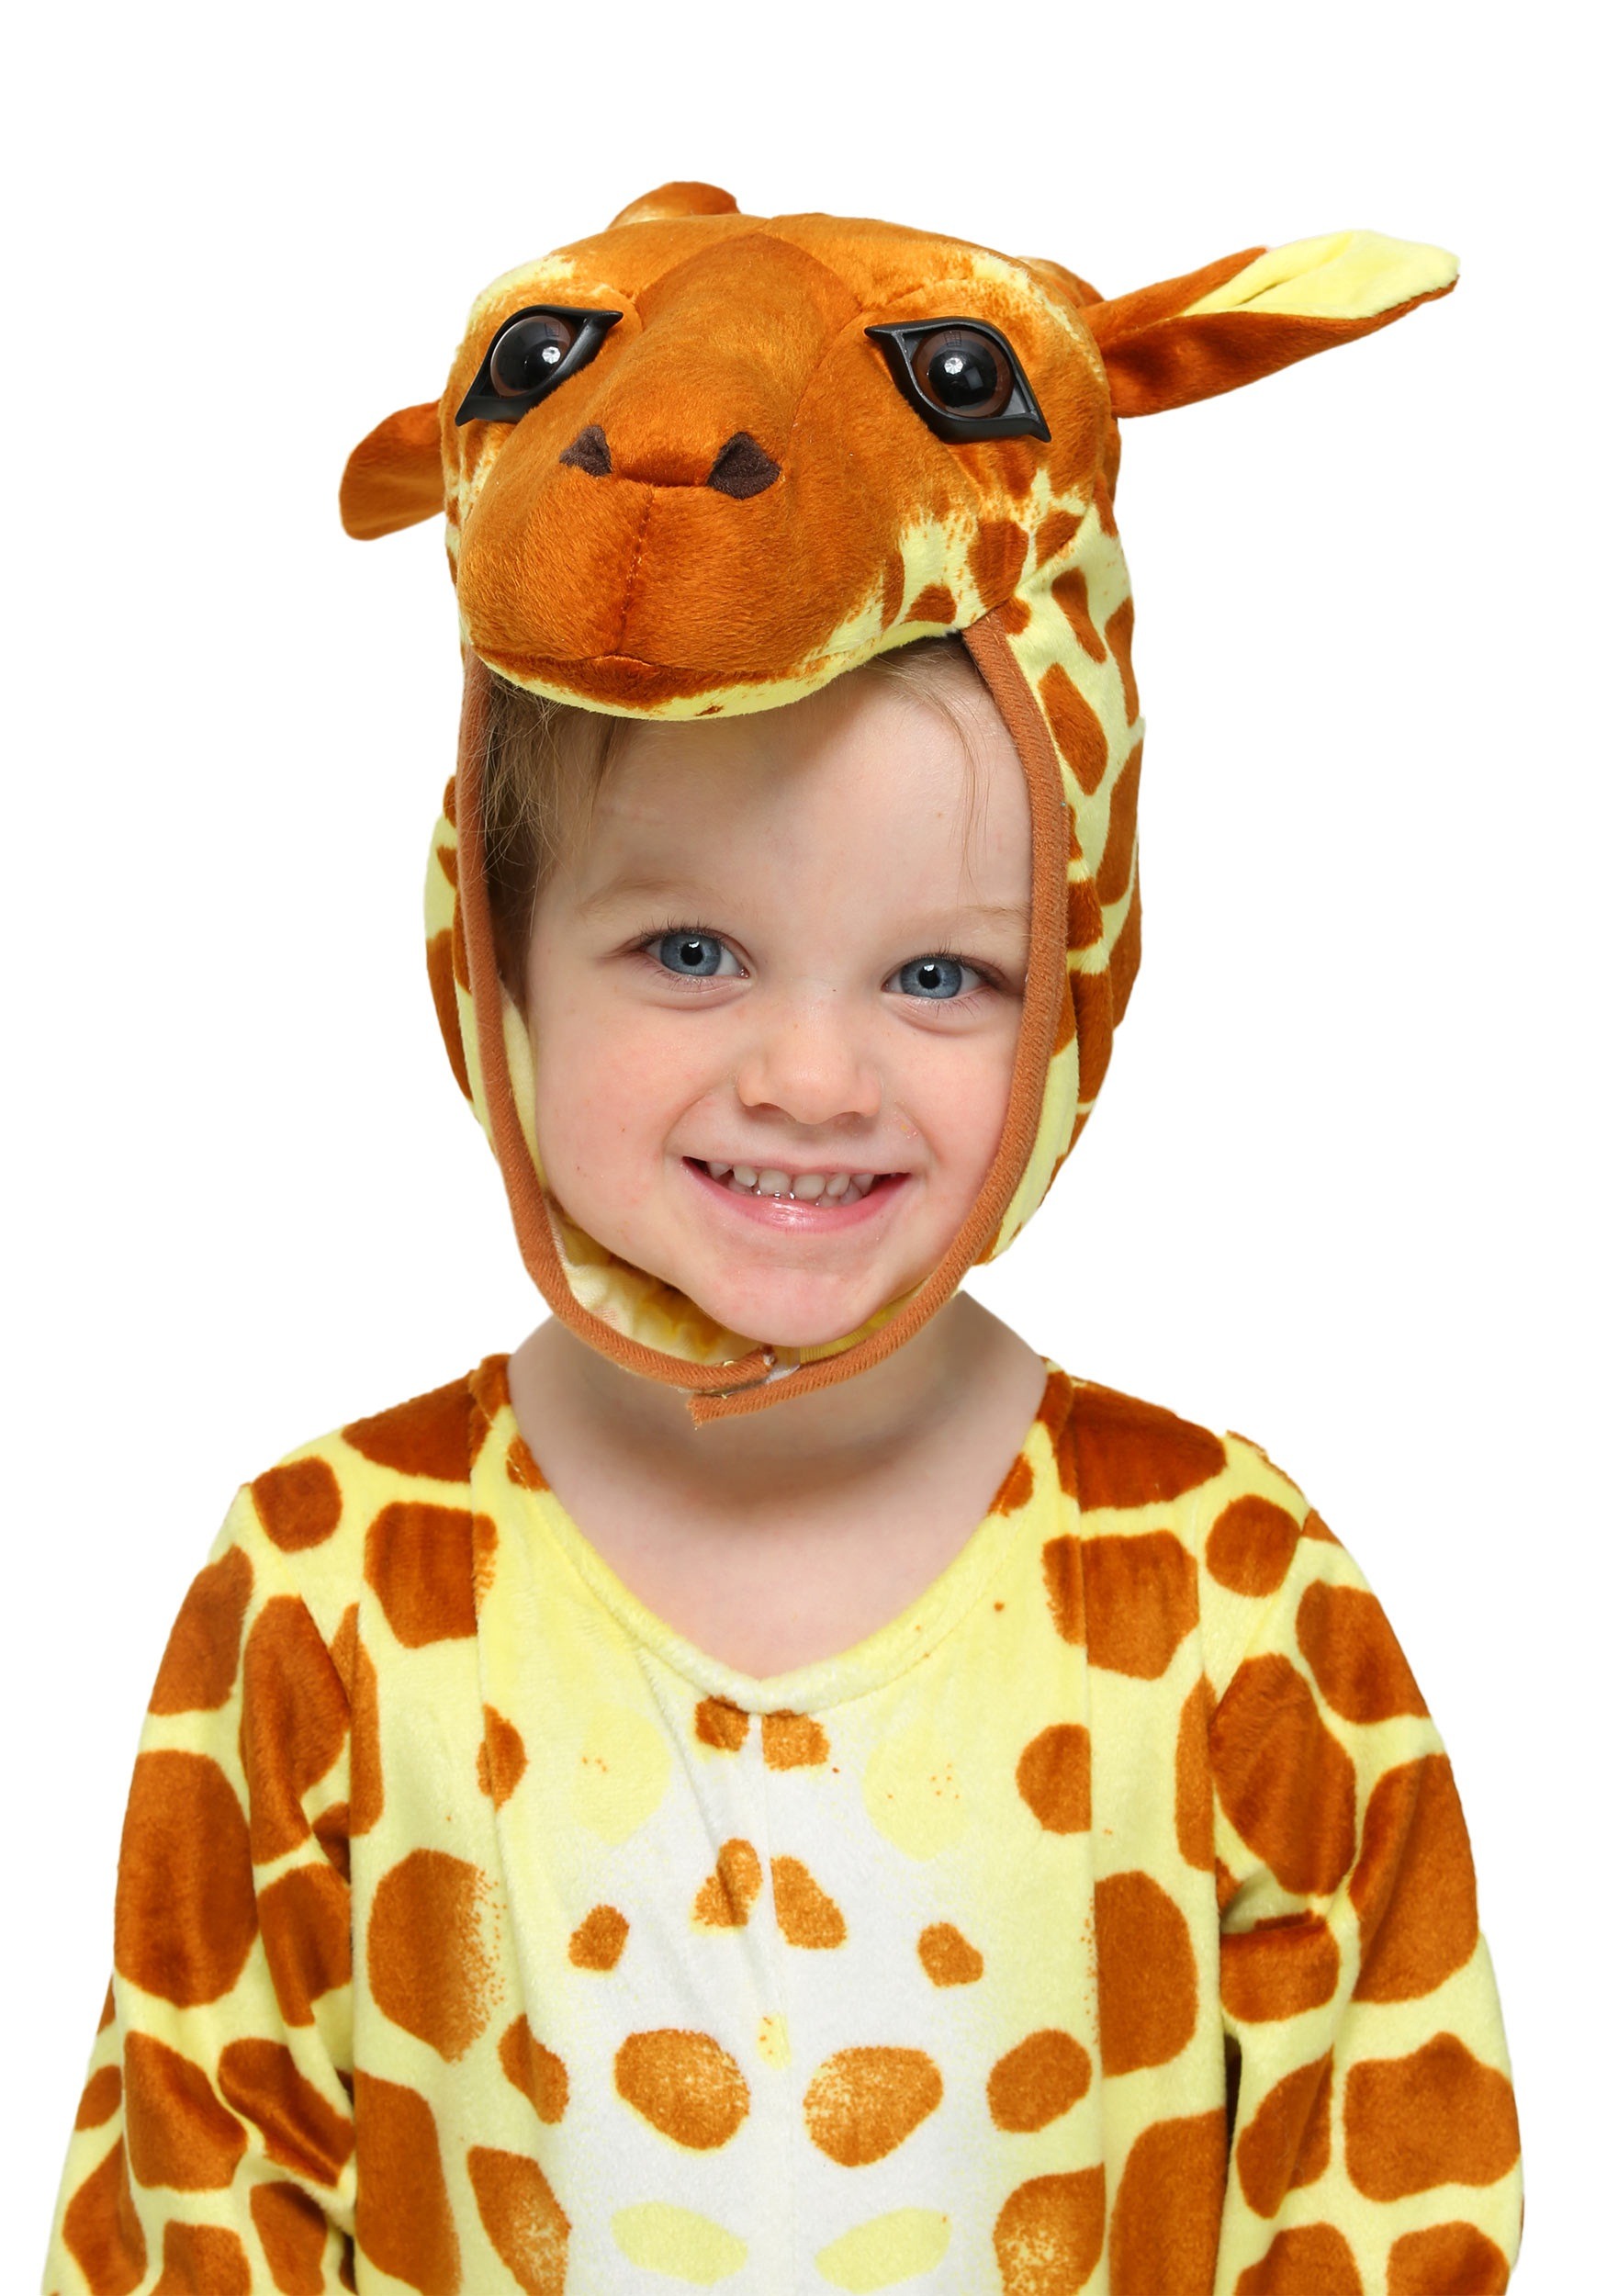 Infant/Toddler Giraffe Costume